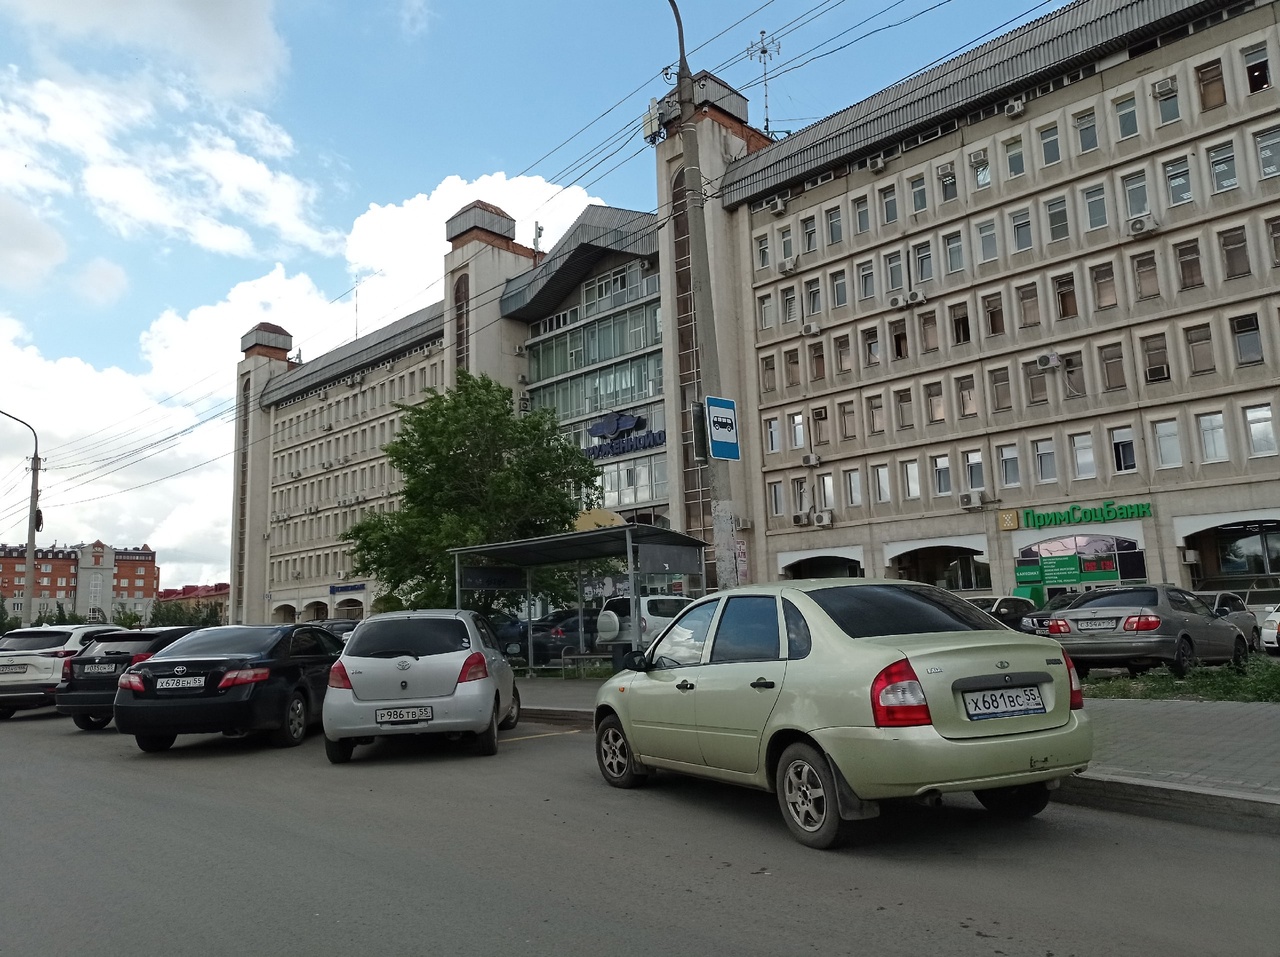 Остановки, через которые завтра поедут маршрутки в Омске, до сих пор не готовы #Омск #Общество #Сегодня